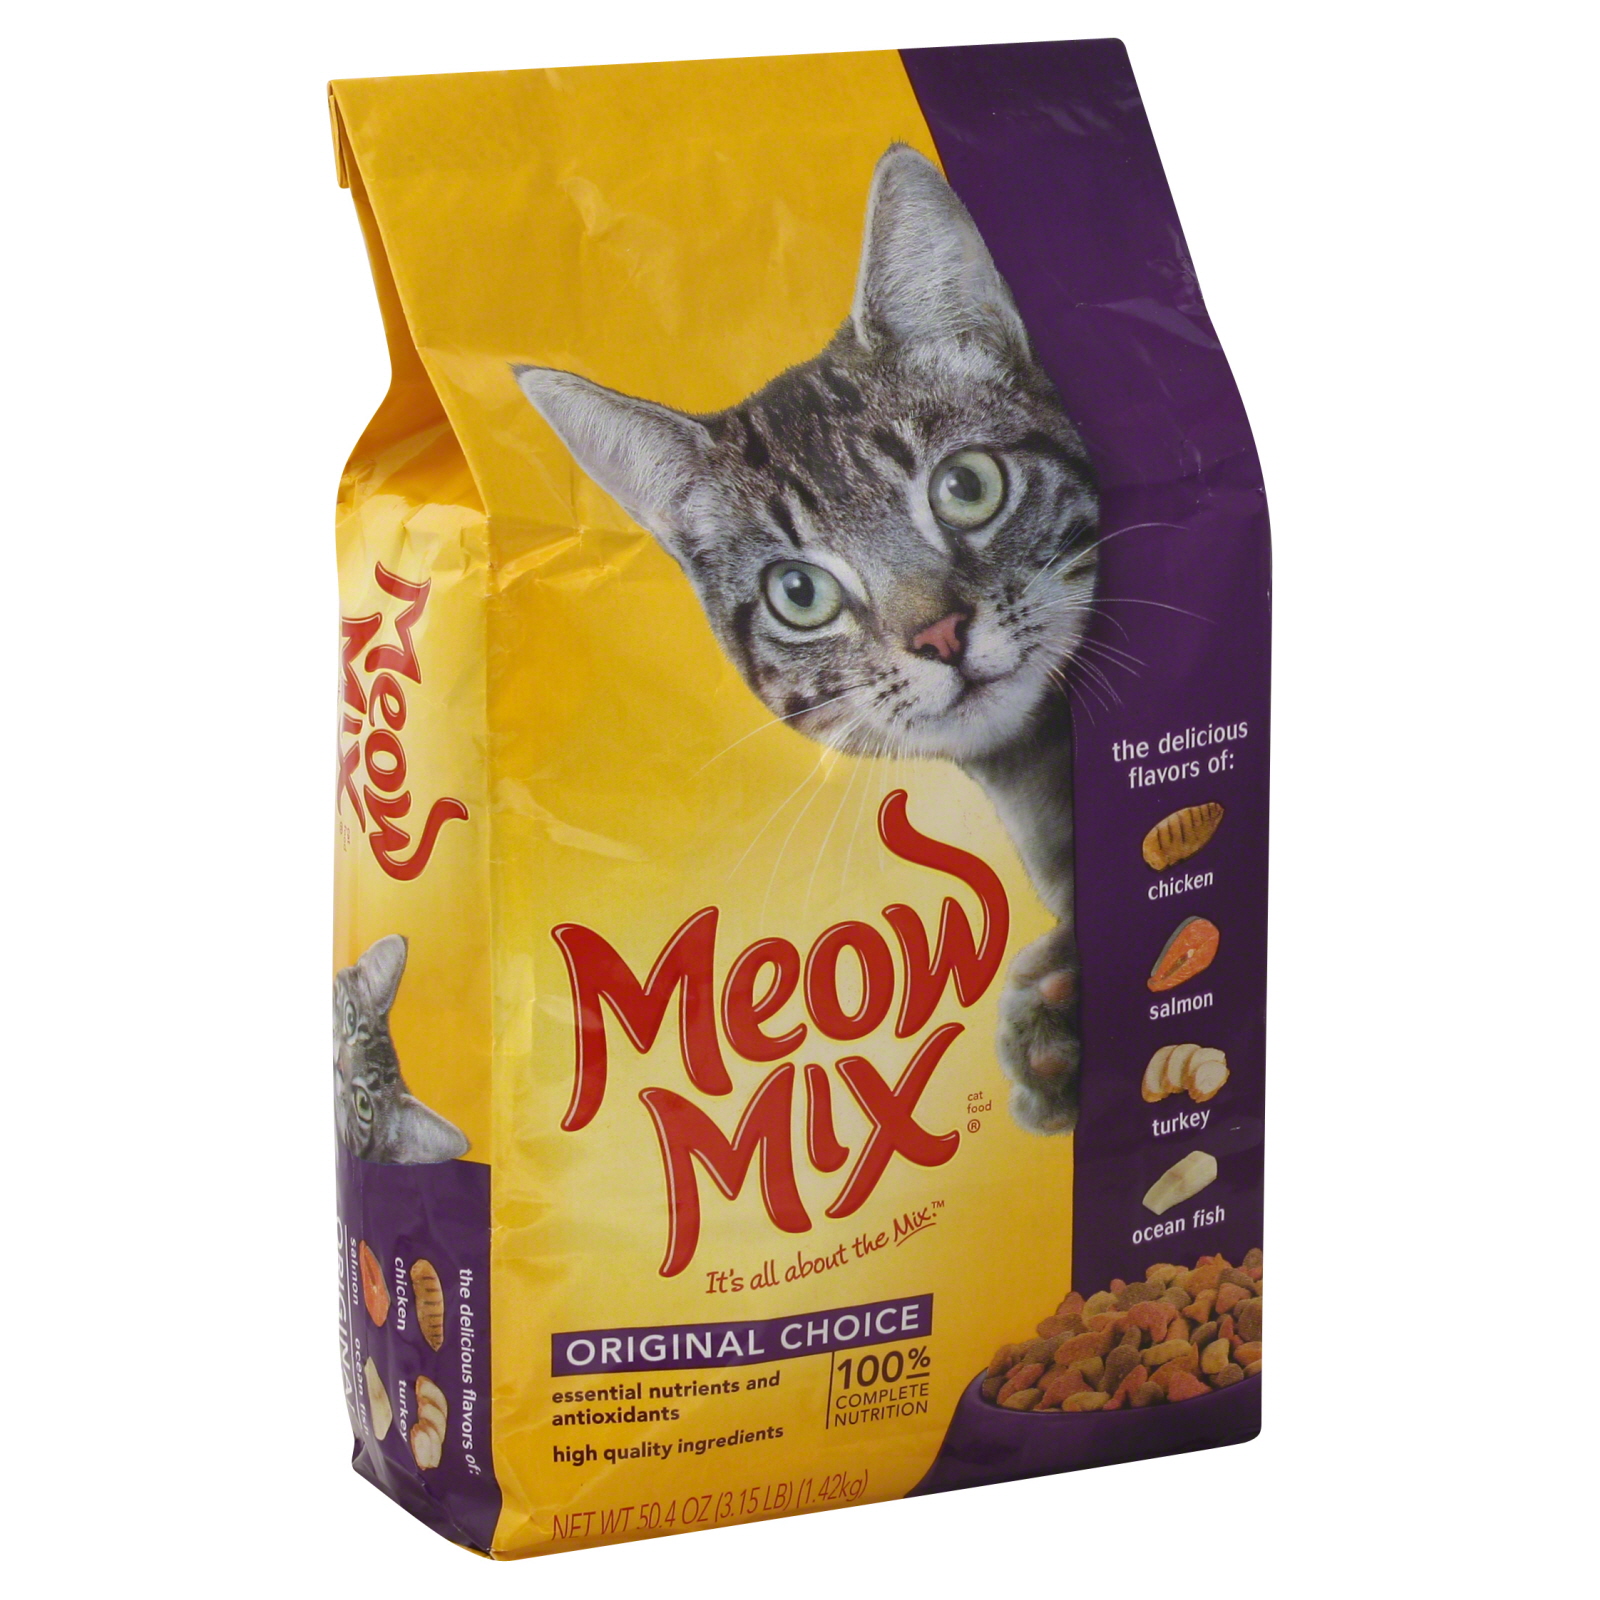 Meow Mix Original Choice Cat Food, 3.15 lb. Bag